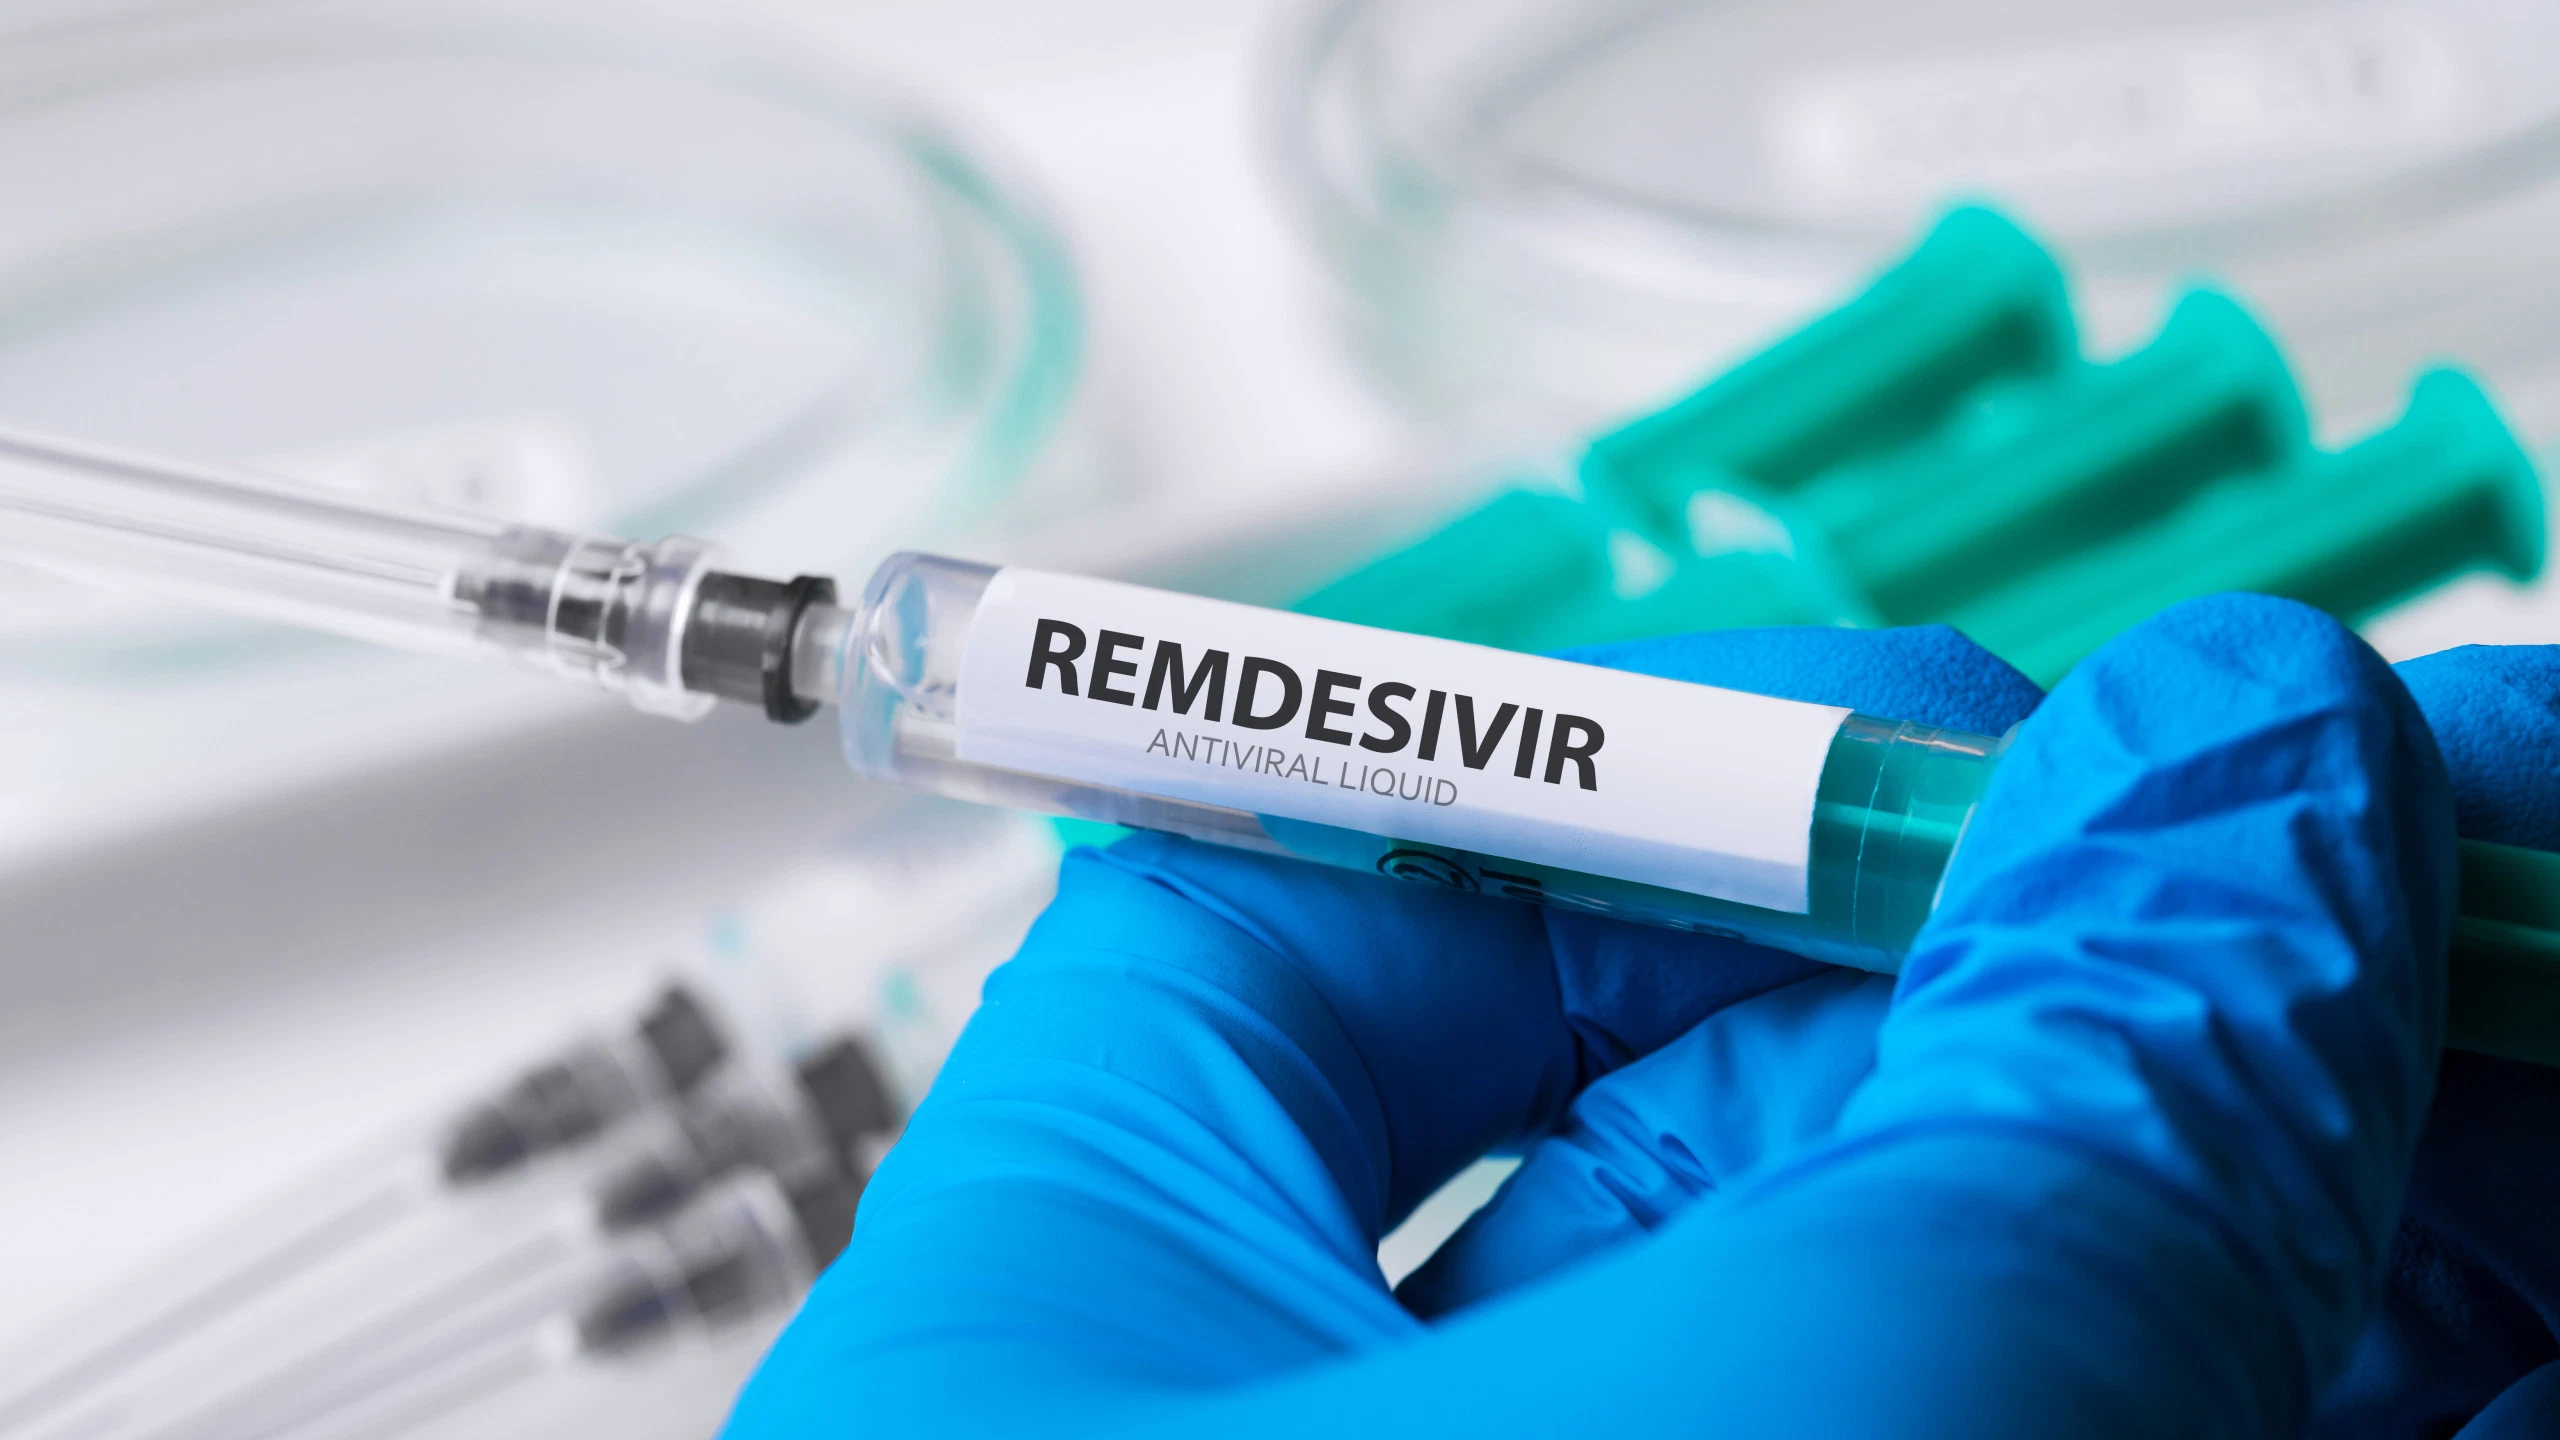 ԵՄ-ն Ռեմդեսիվիրը ճանաչել է որպես կորոնավիրուսի առաջին դեղամիջոց